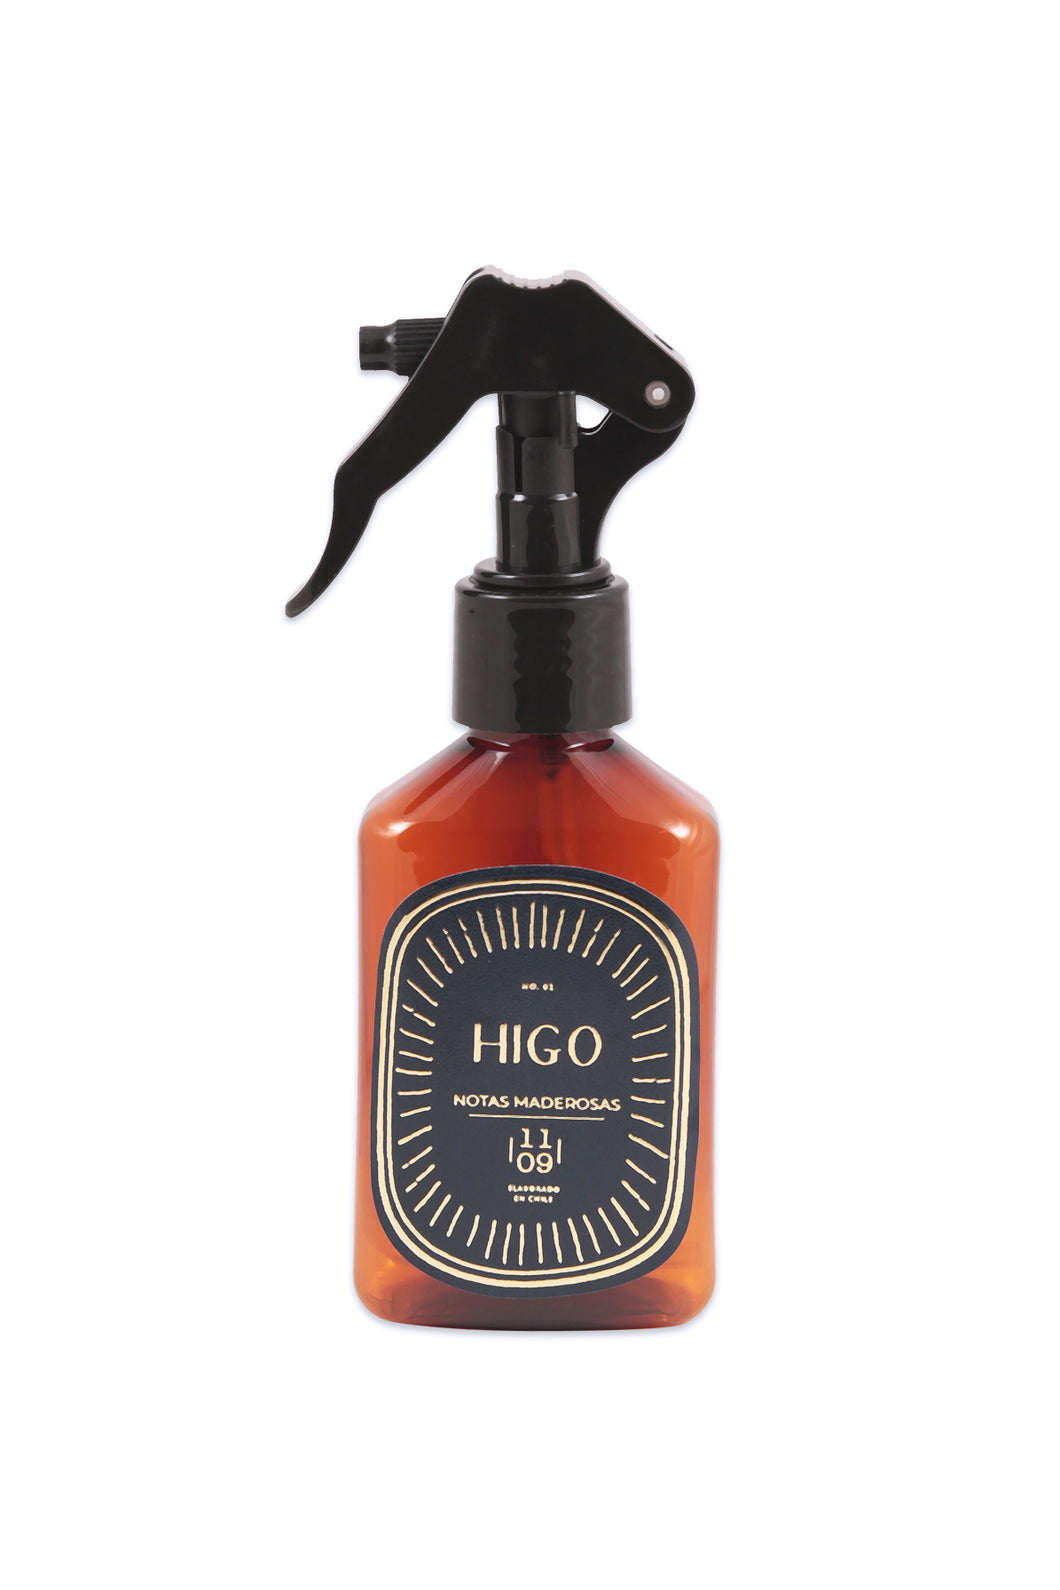 HIGO <br> Mini Spray ambientador <br> 1109